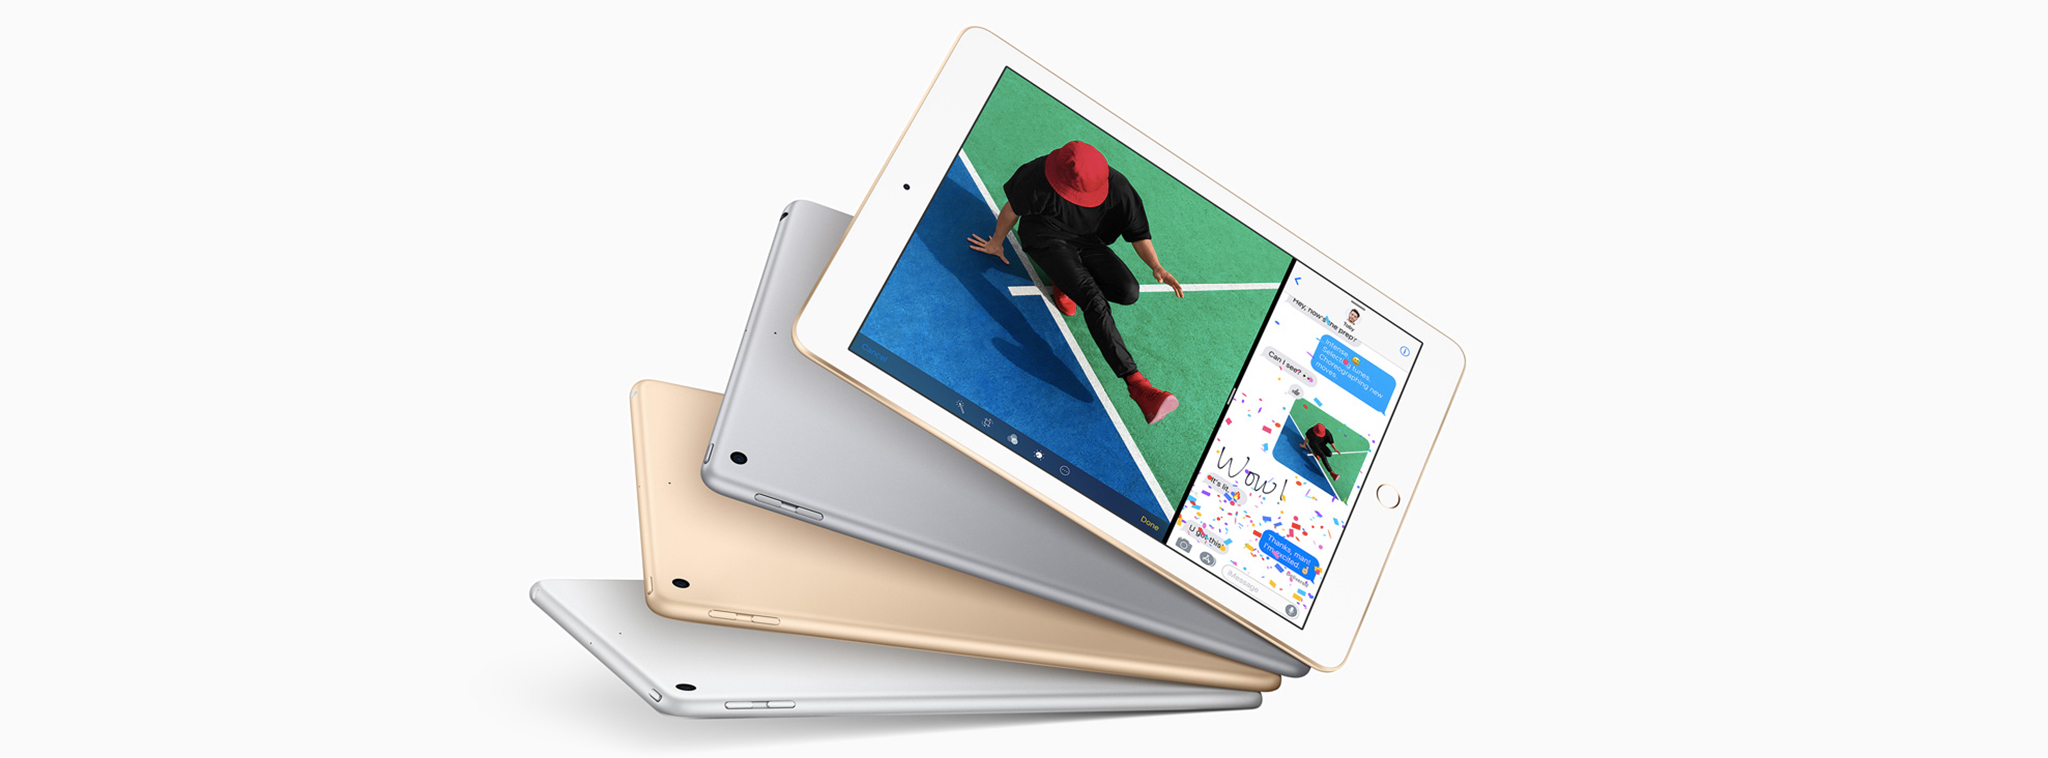 Liệu Apple có làm chậm iPad khi pin chai không?